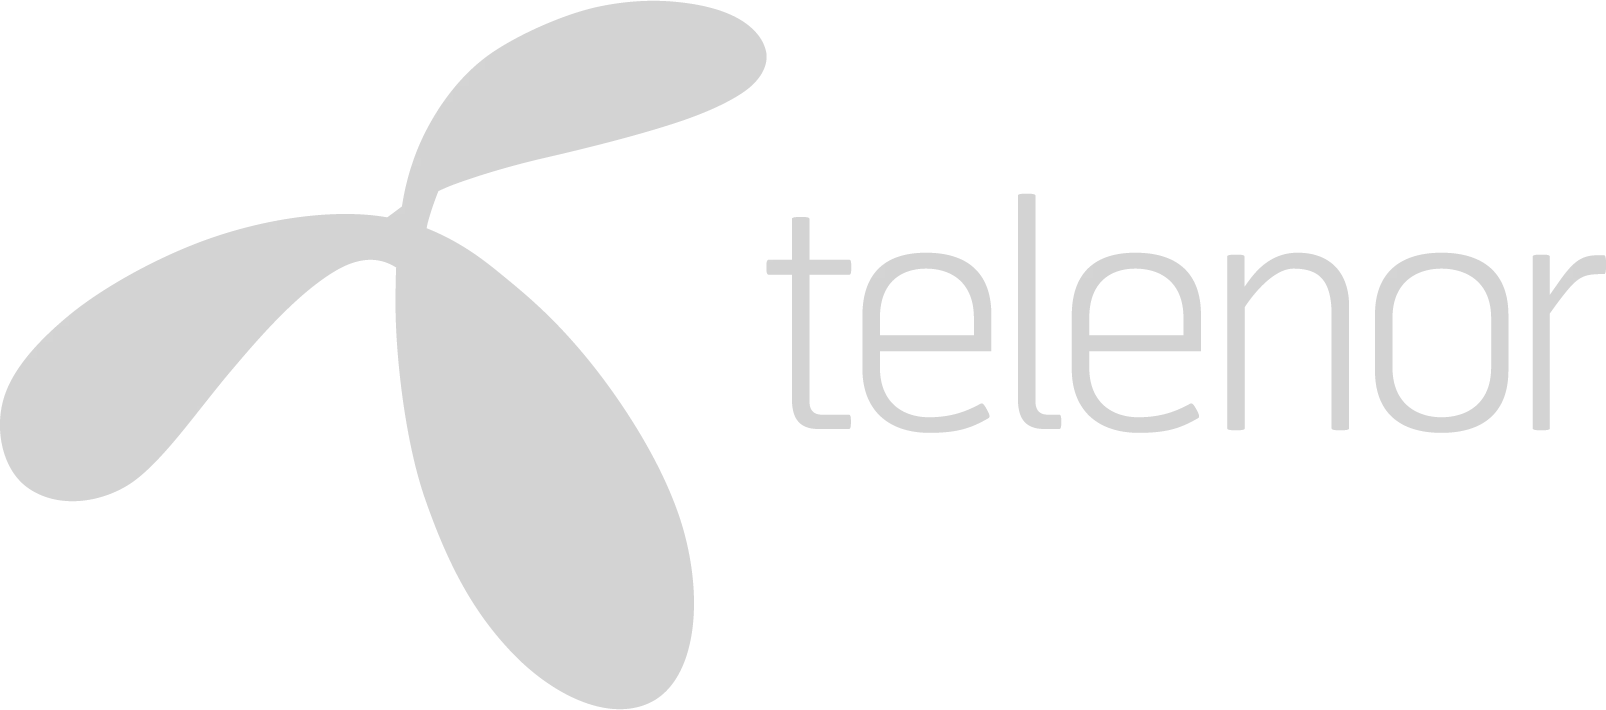 telenor logo - Elisa Polystar